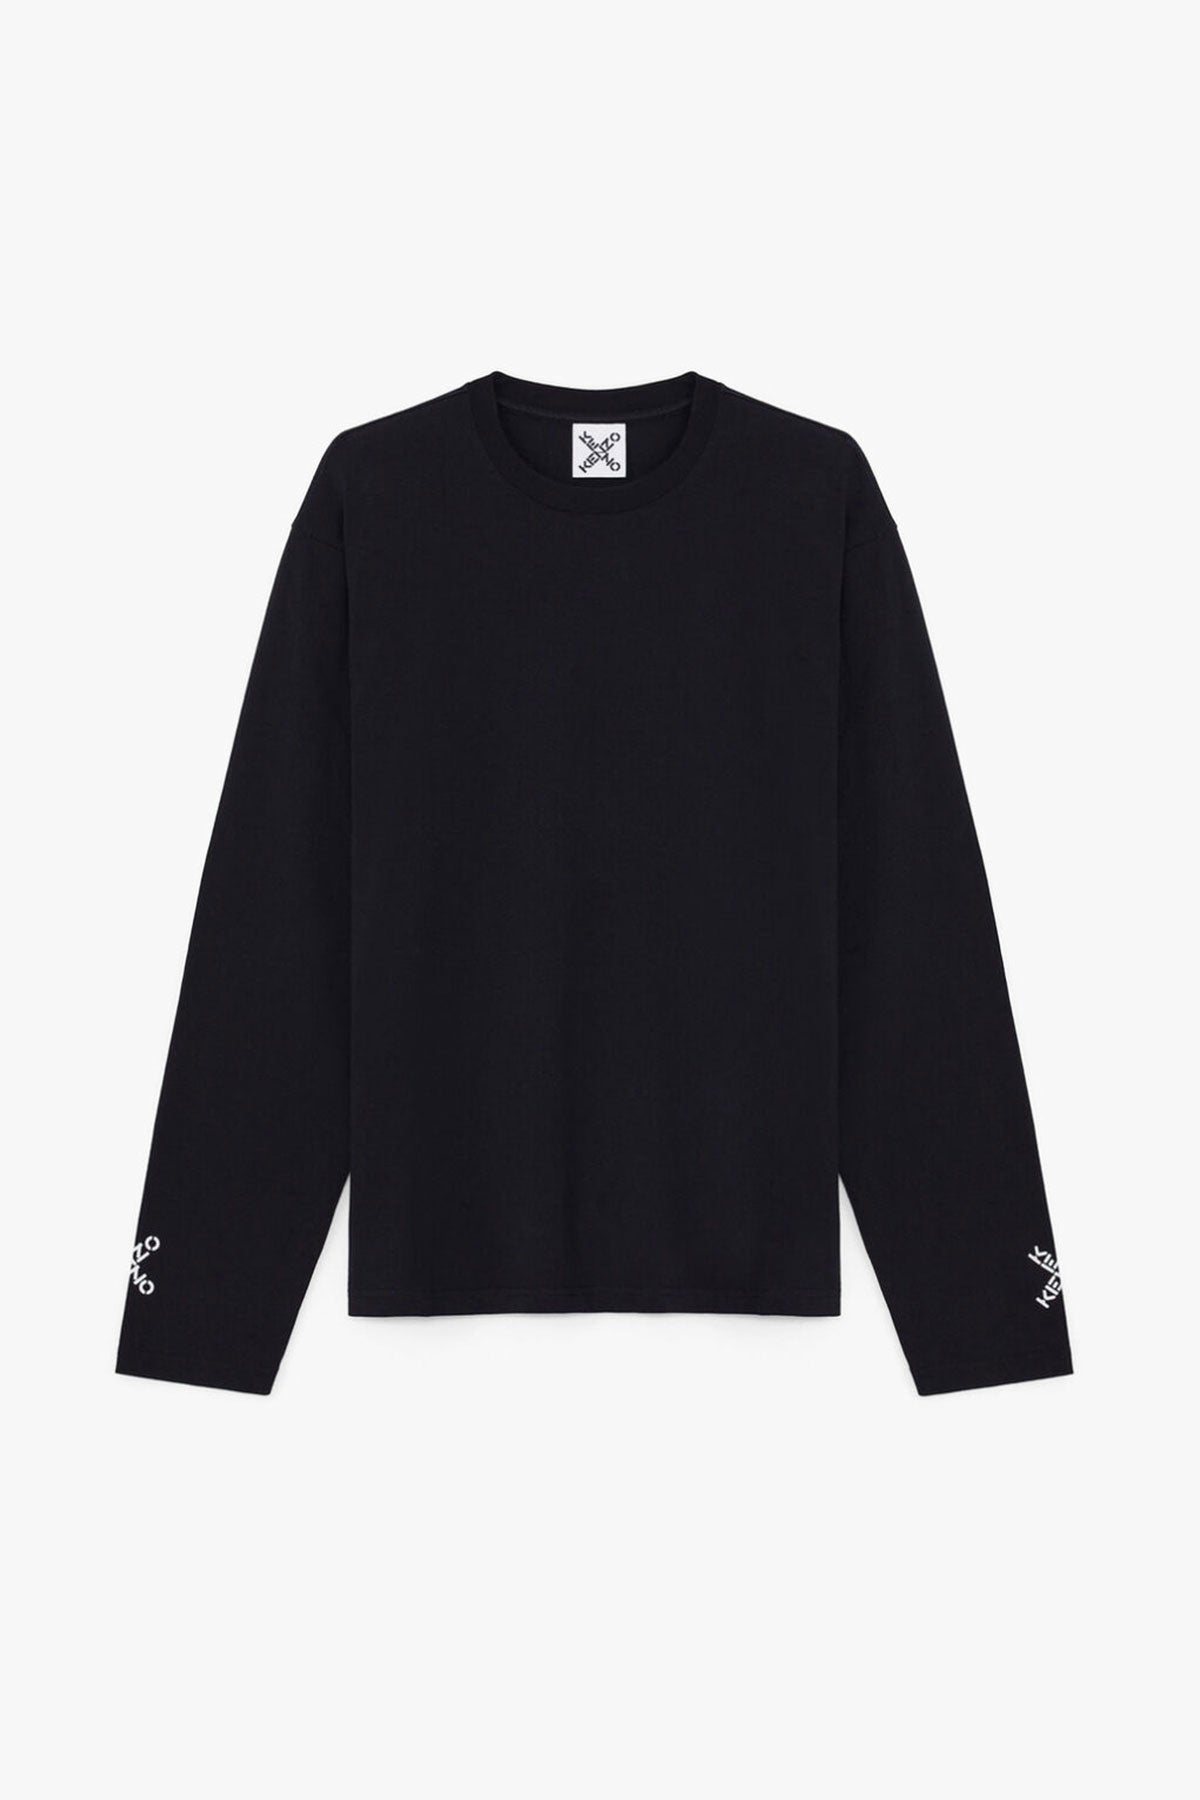 Kenzo Sport Sweatshirt-Libas Trendy Fashion Store